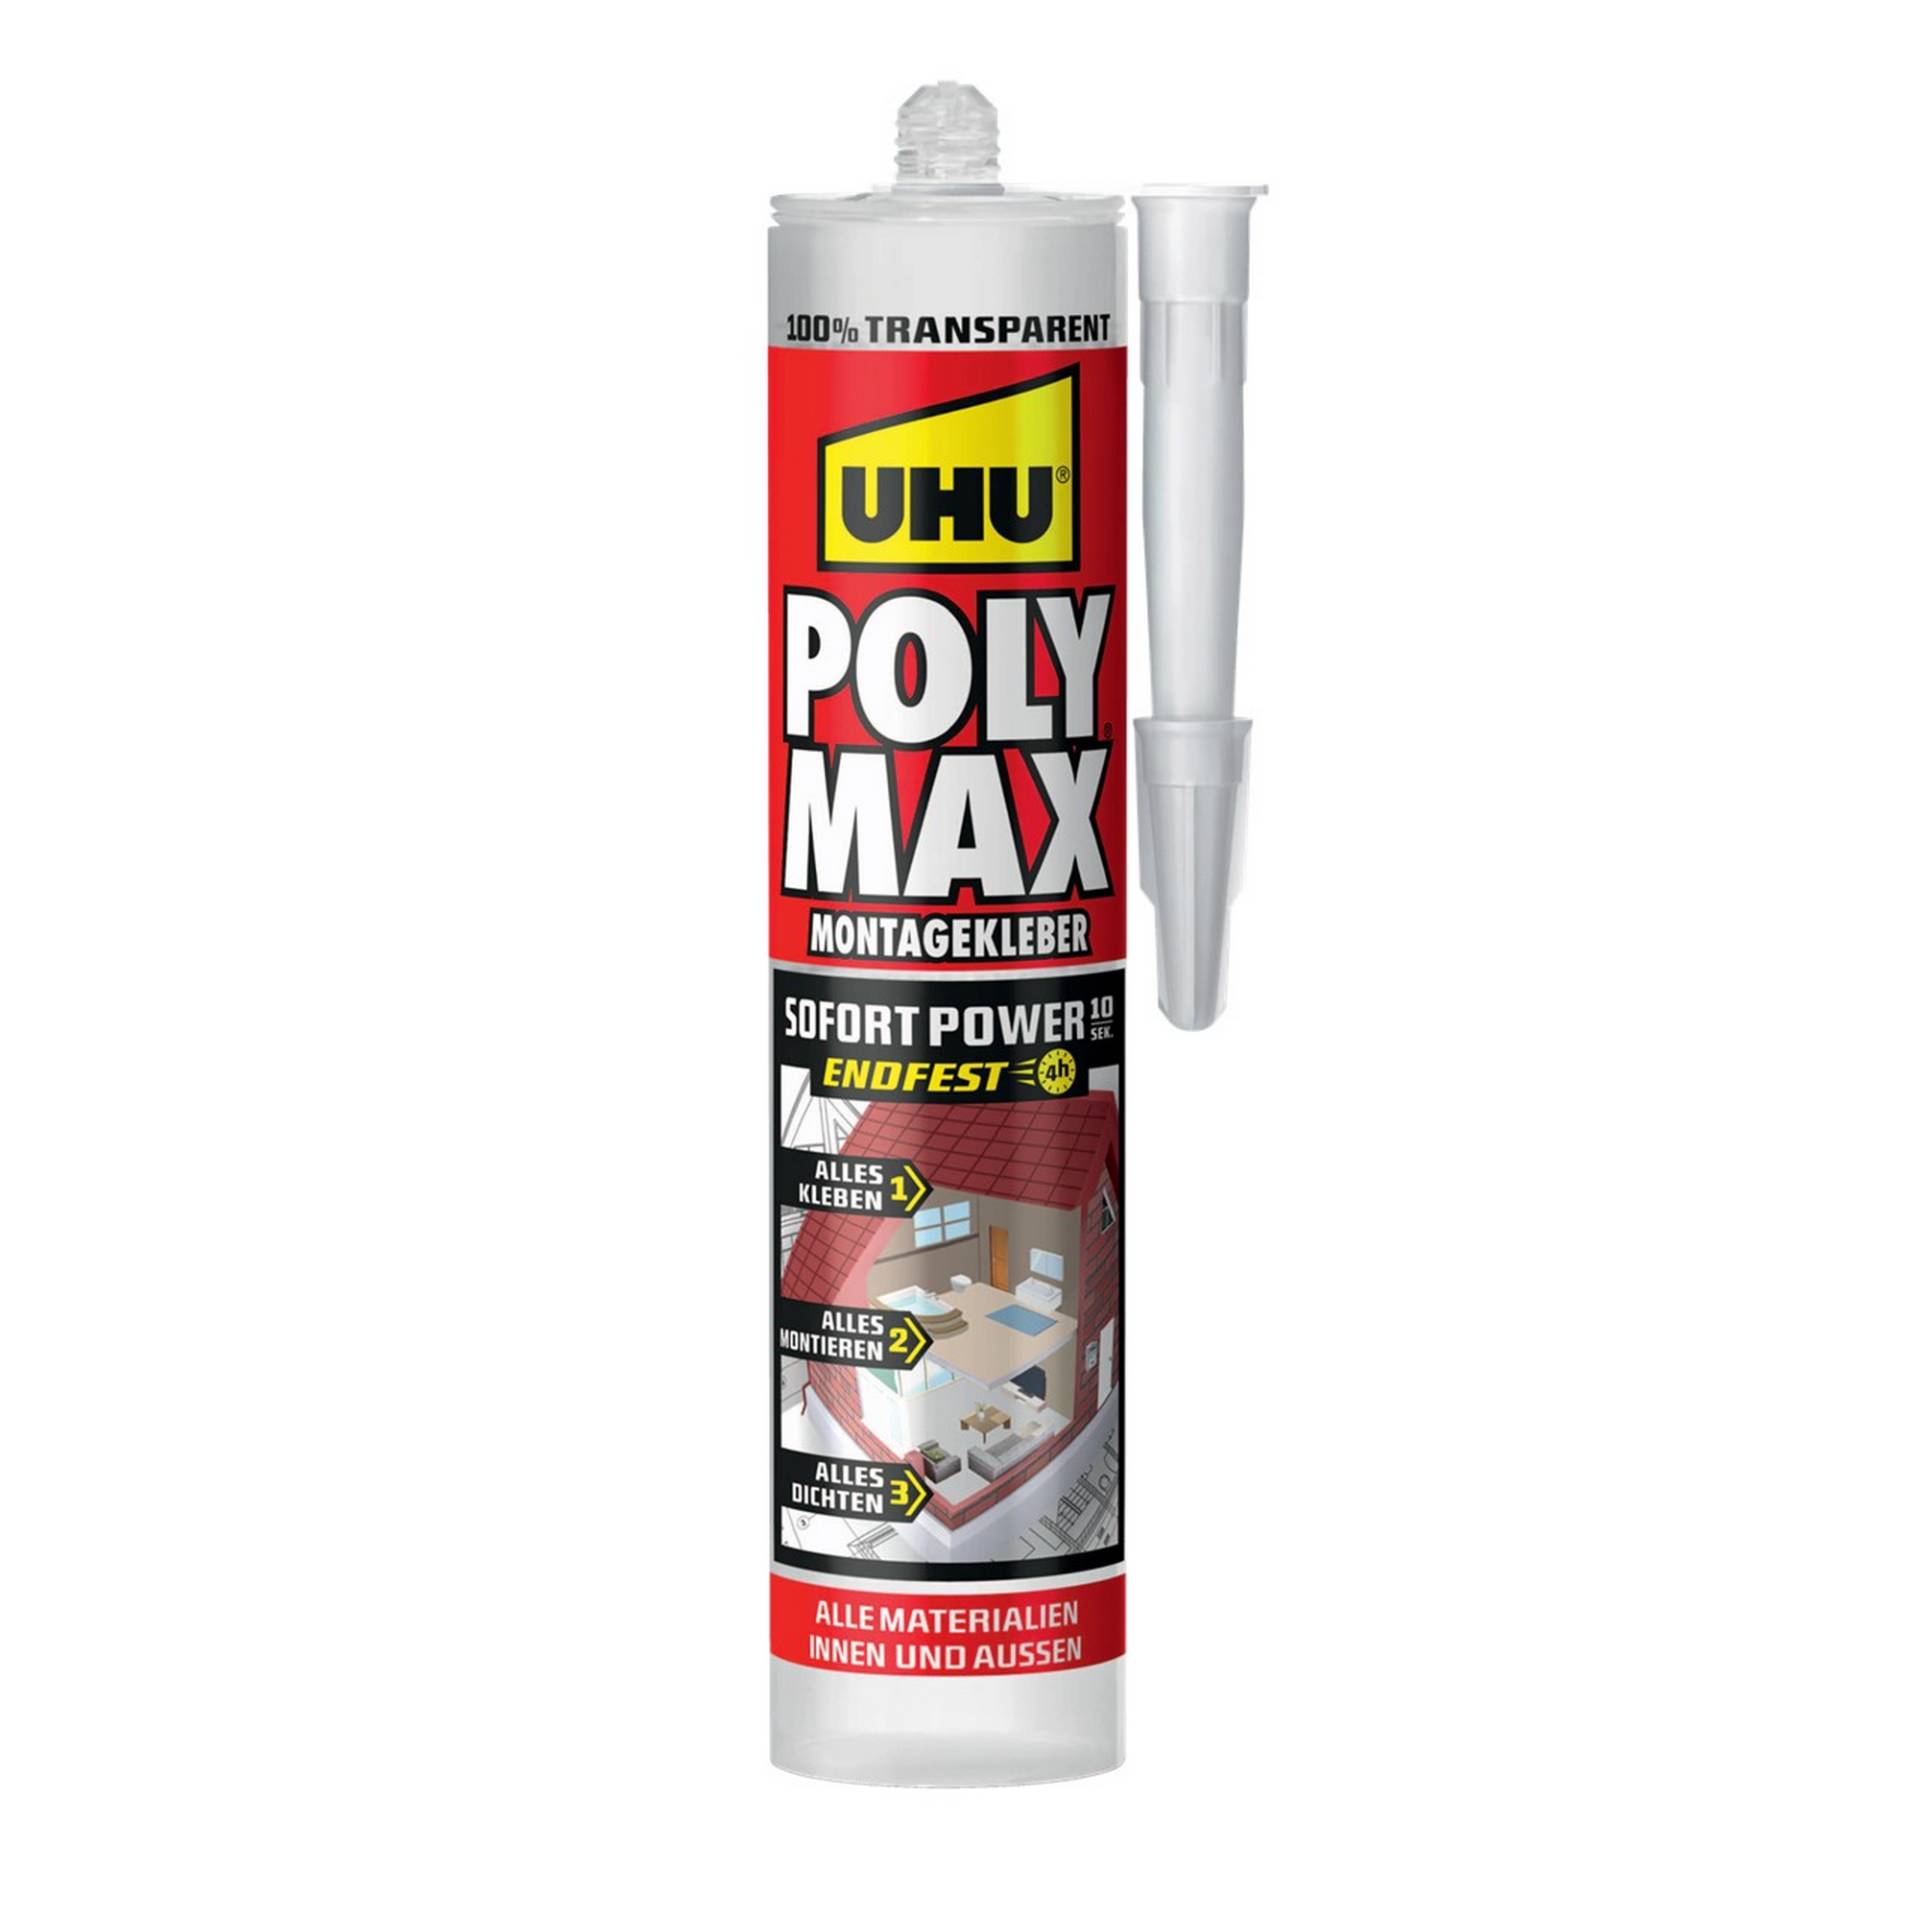 Uhu Montagekleber 'POLY MAX Sofort Power' transparent 300 g von UHU